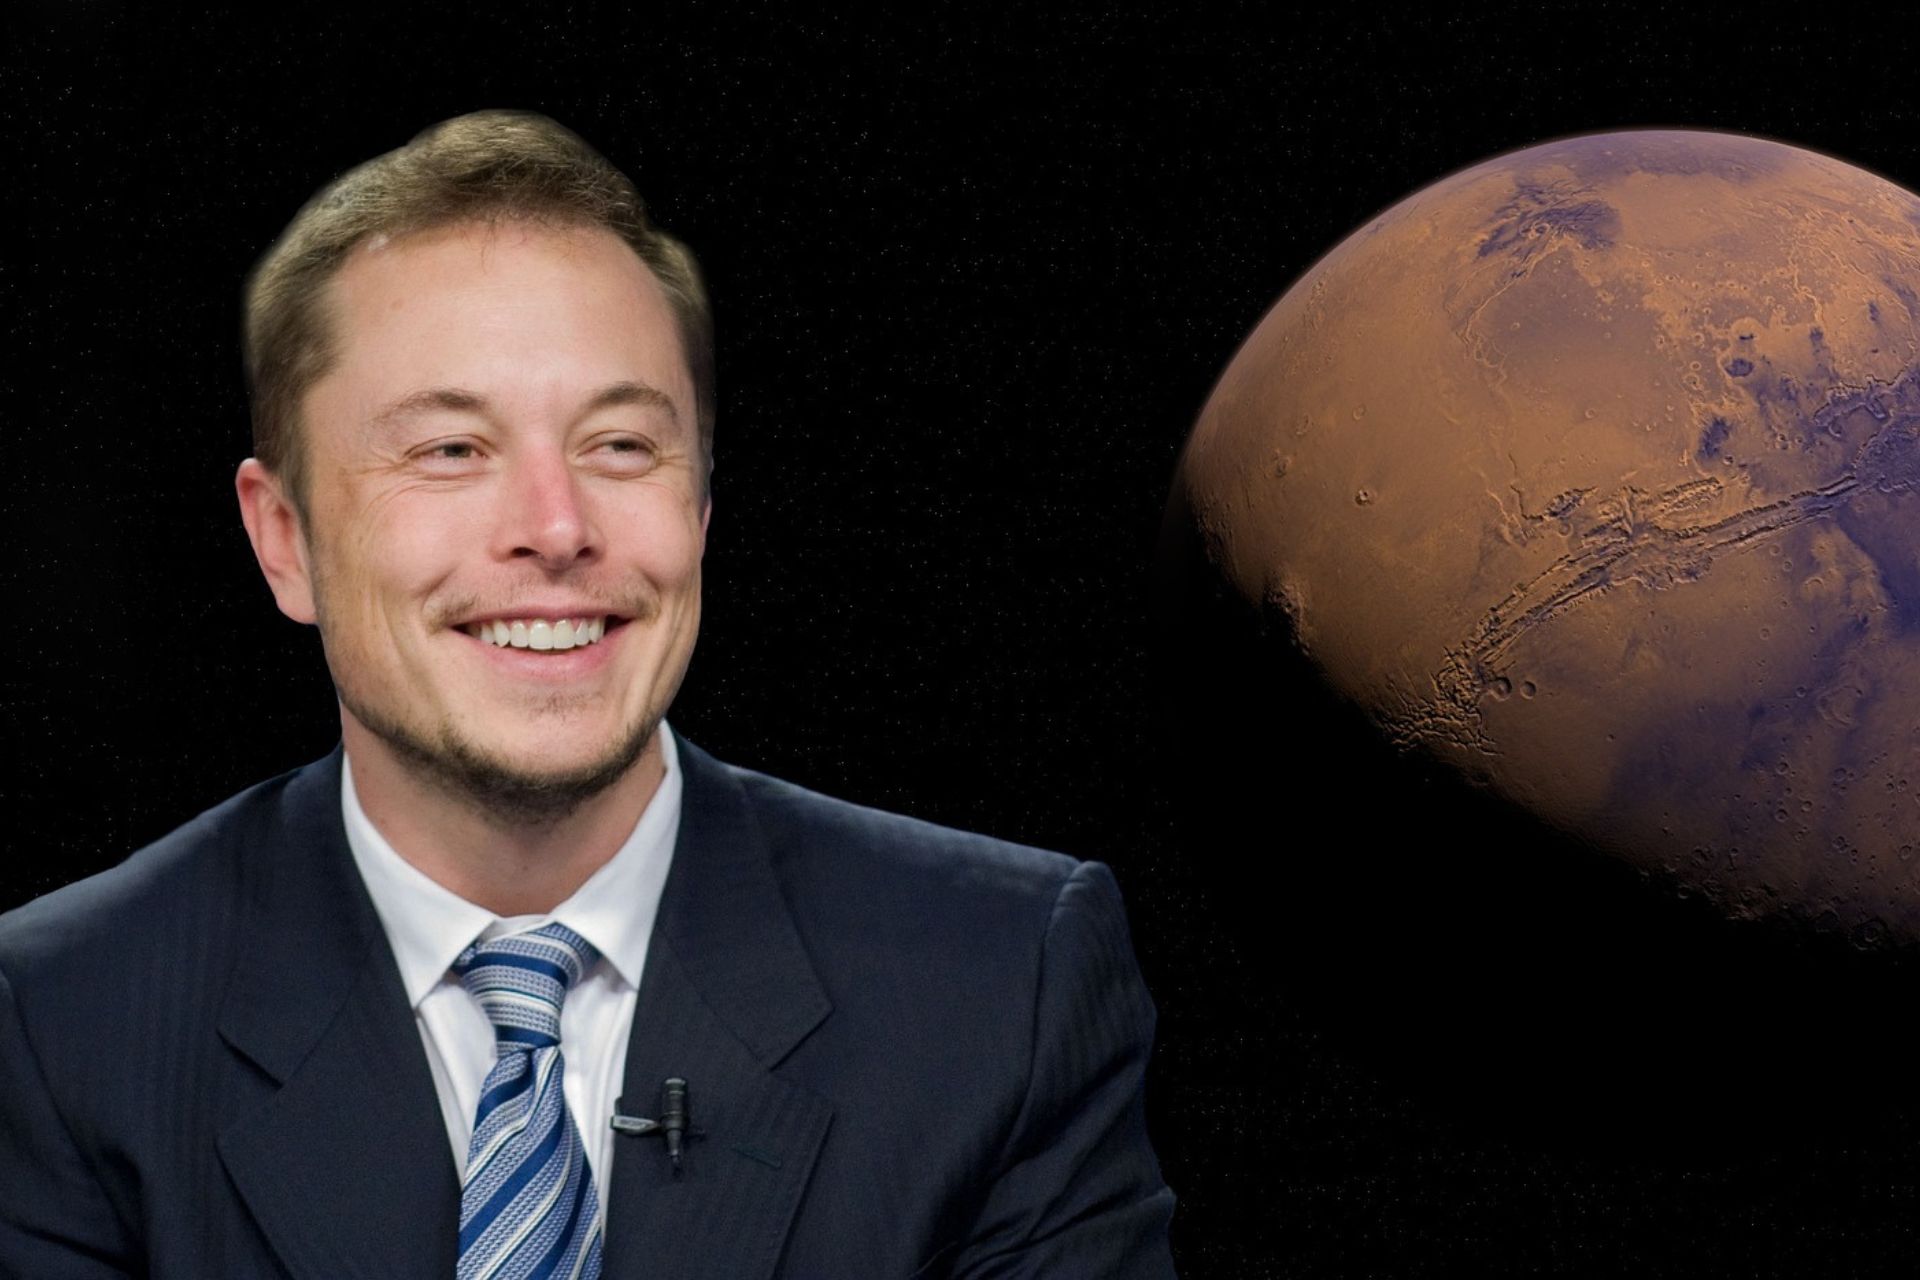 Elon Musk i Twitter: Elon Musk, słynny amerykański miliarder, dyrektor generalny Tesli, producenta samochodów elektrycznych